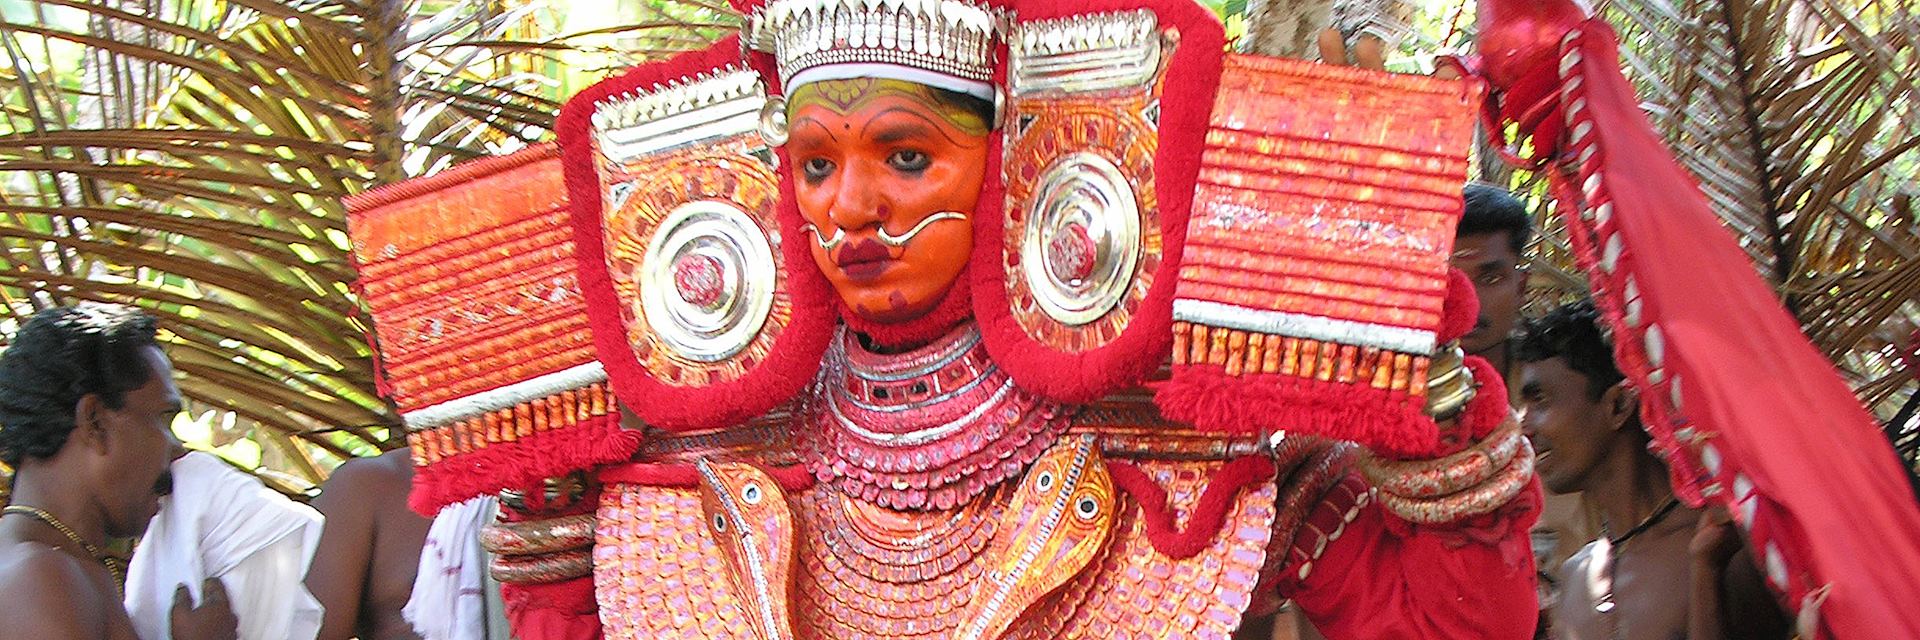 Theyyam dancer, Tellicherry